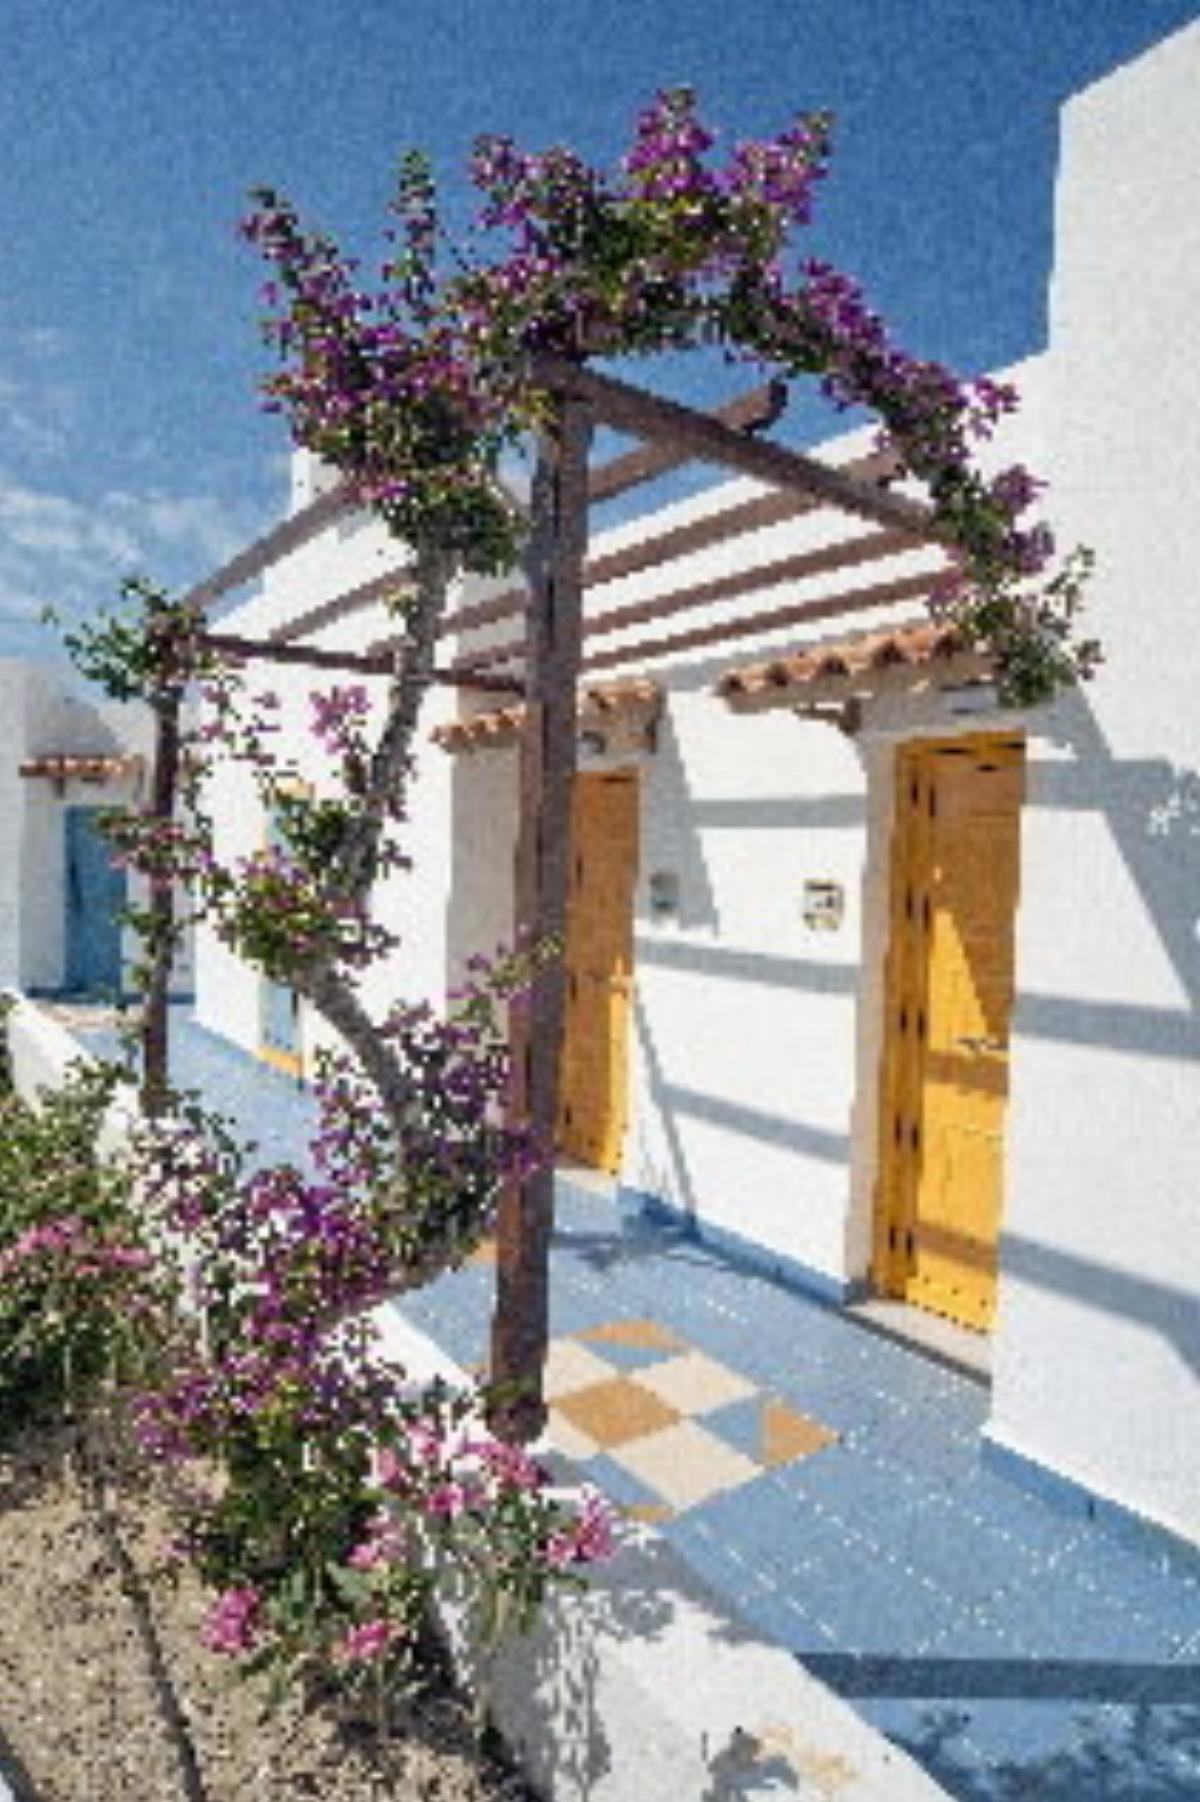 Lagas Aegean Village Hotel Kos Greece